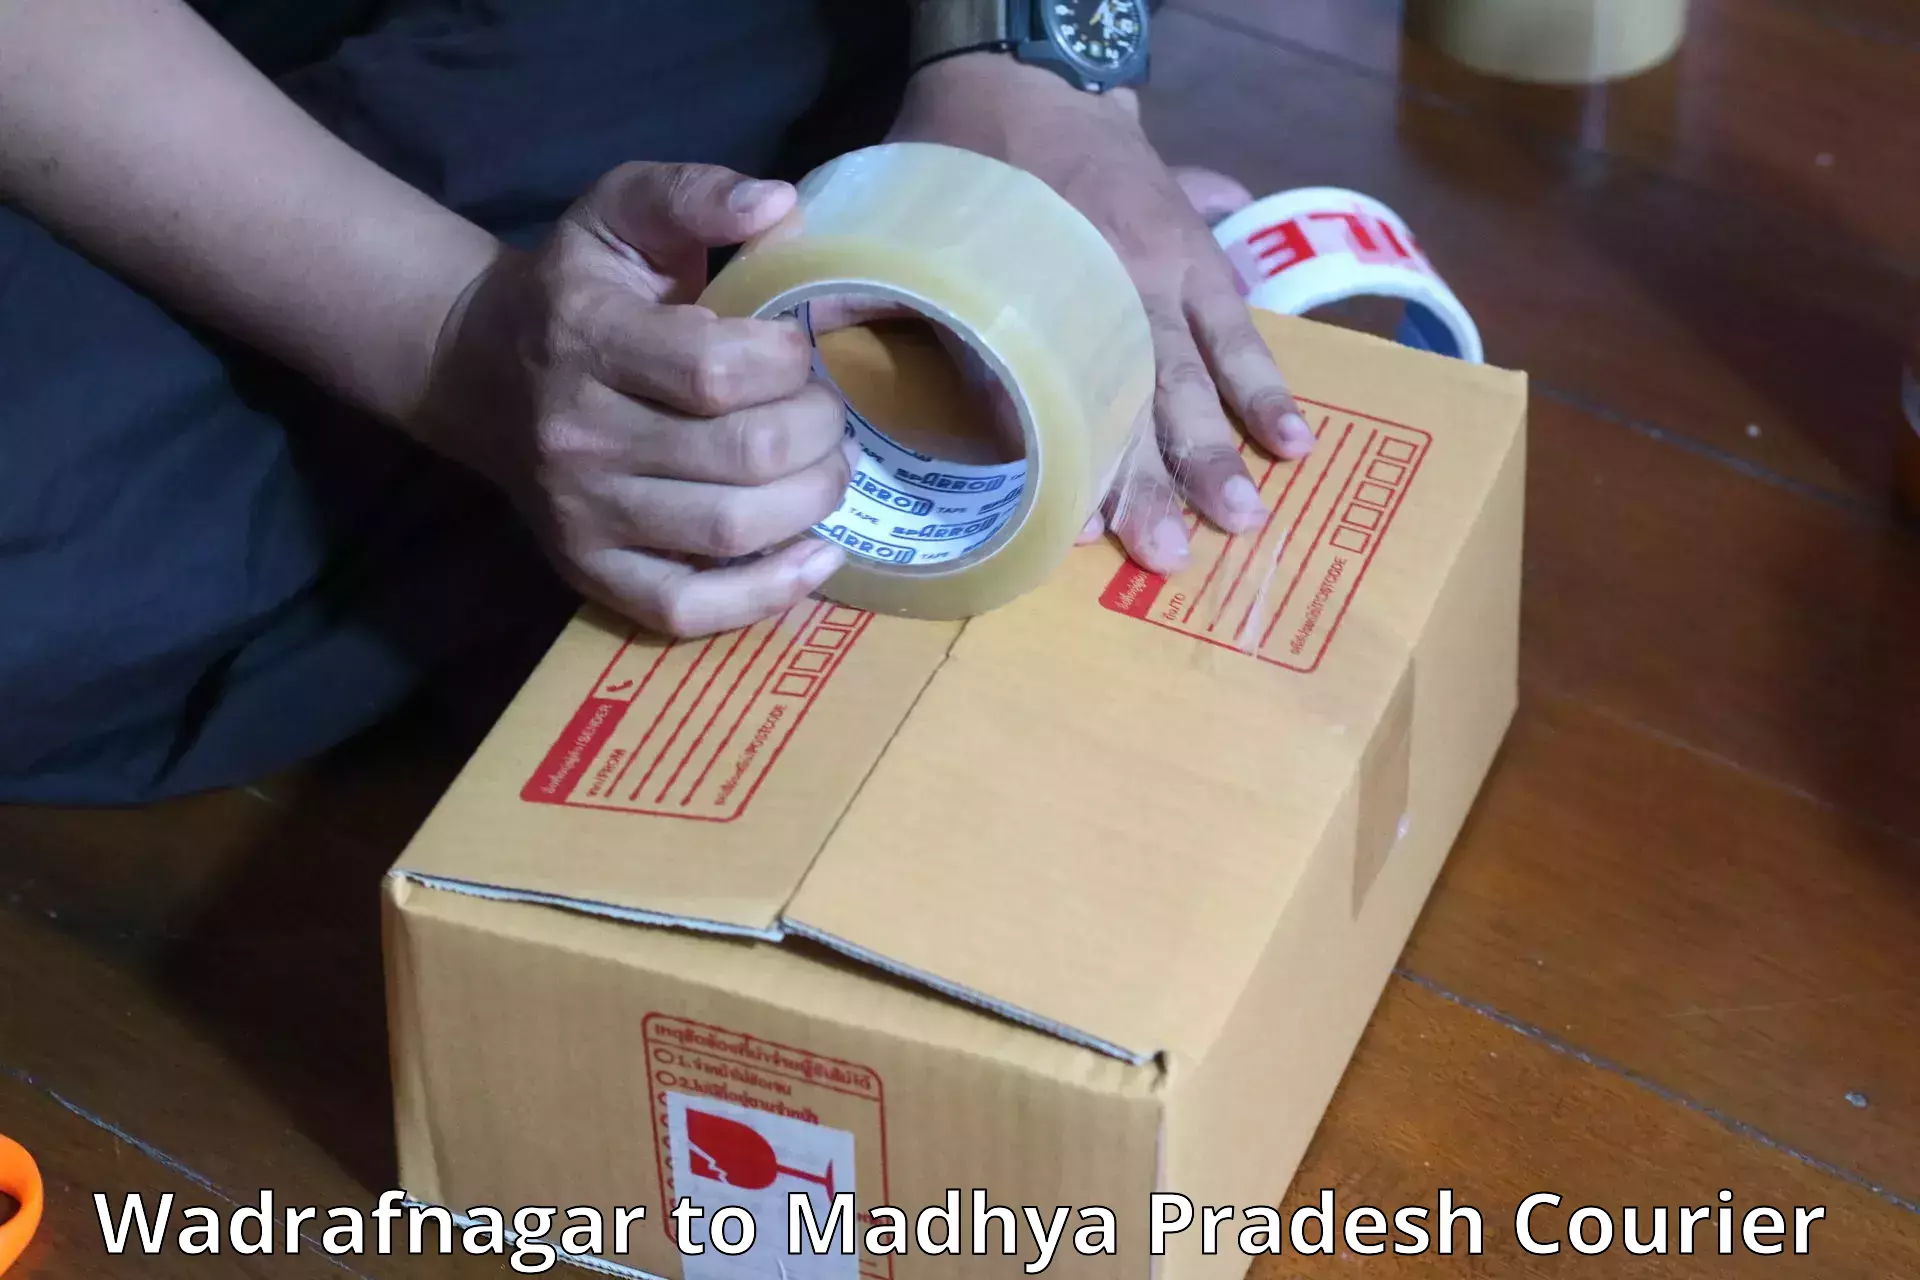 Digital baggage courier Wadrafnagar to Madhya Pradesh